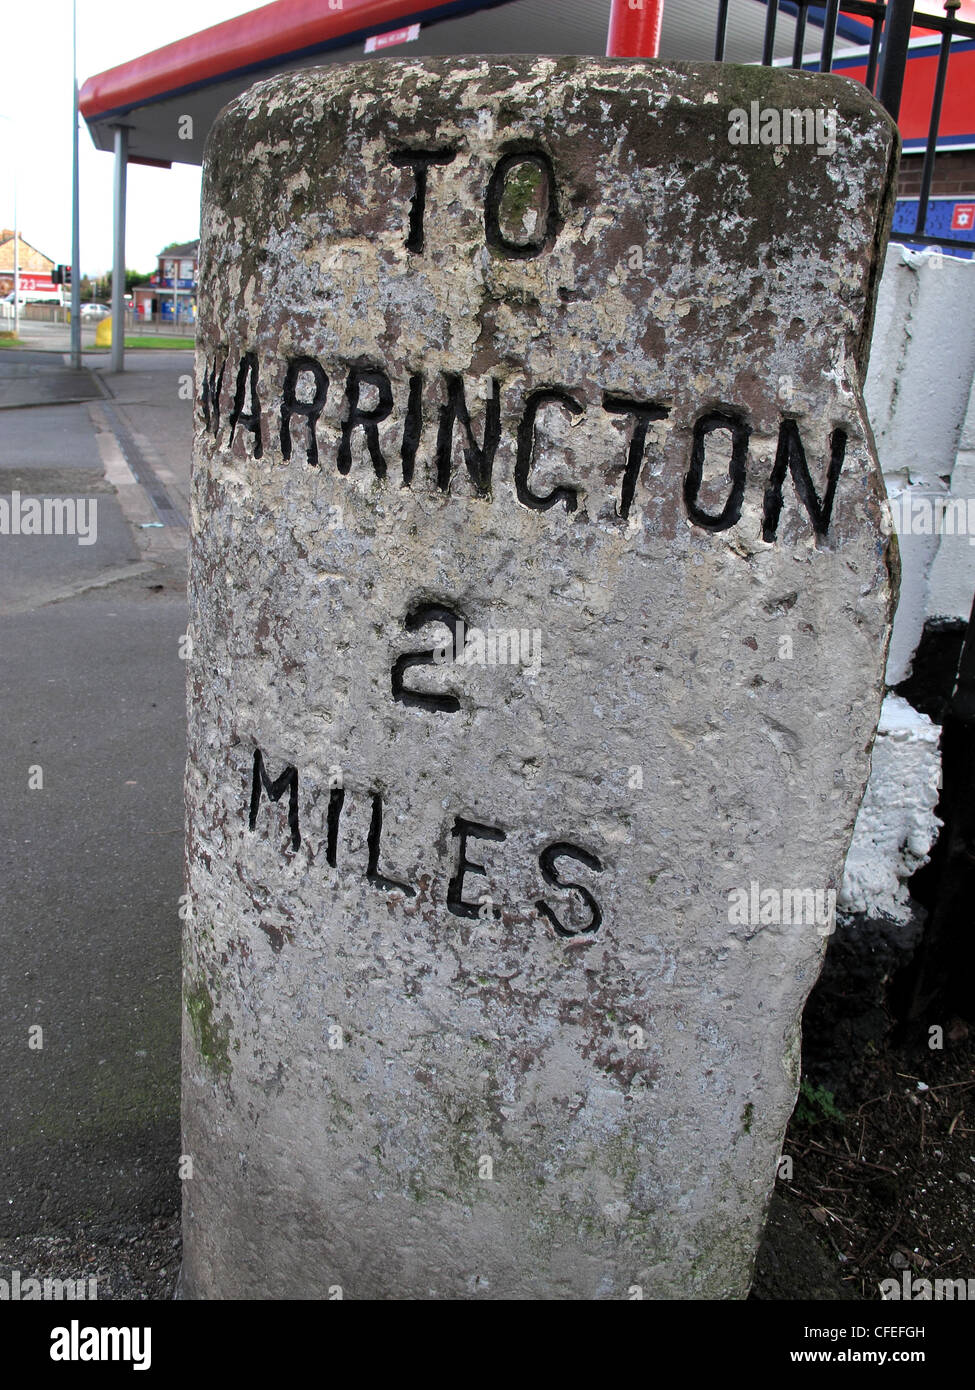 Milepost à Warrington 2 Miles, sur A57 à Liverpool Road, Penketh, Cheshire, Angleterre, Royaume-Uni Banque D'Images